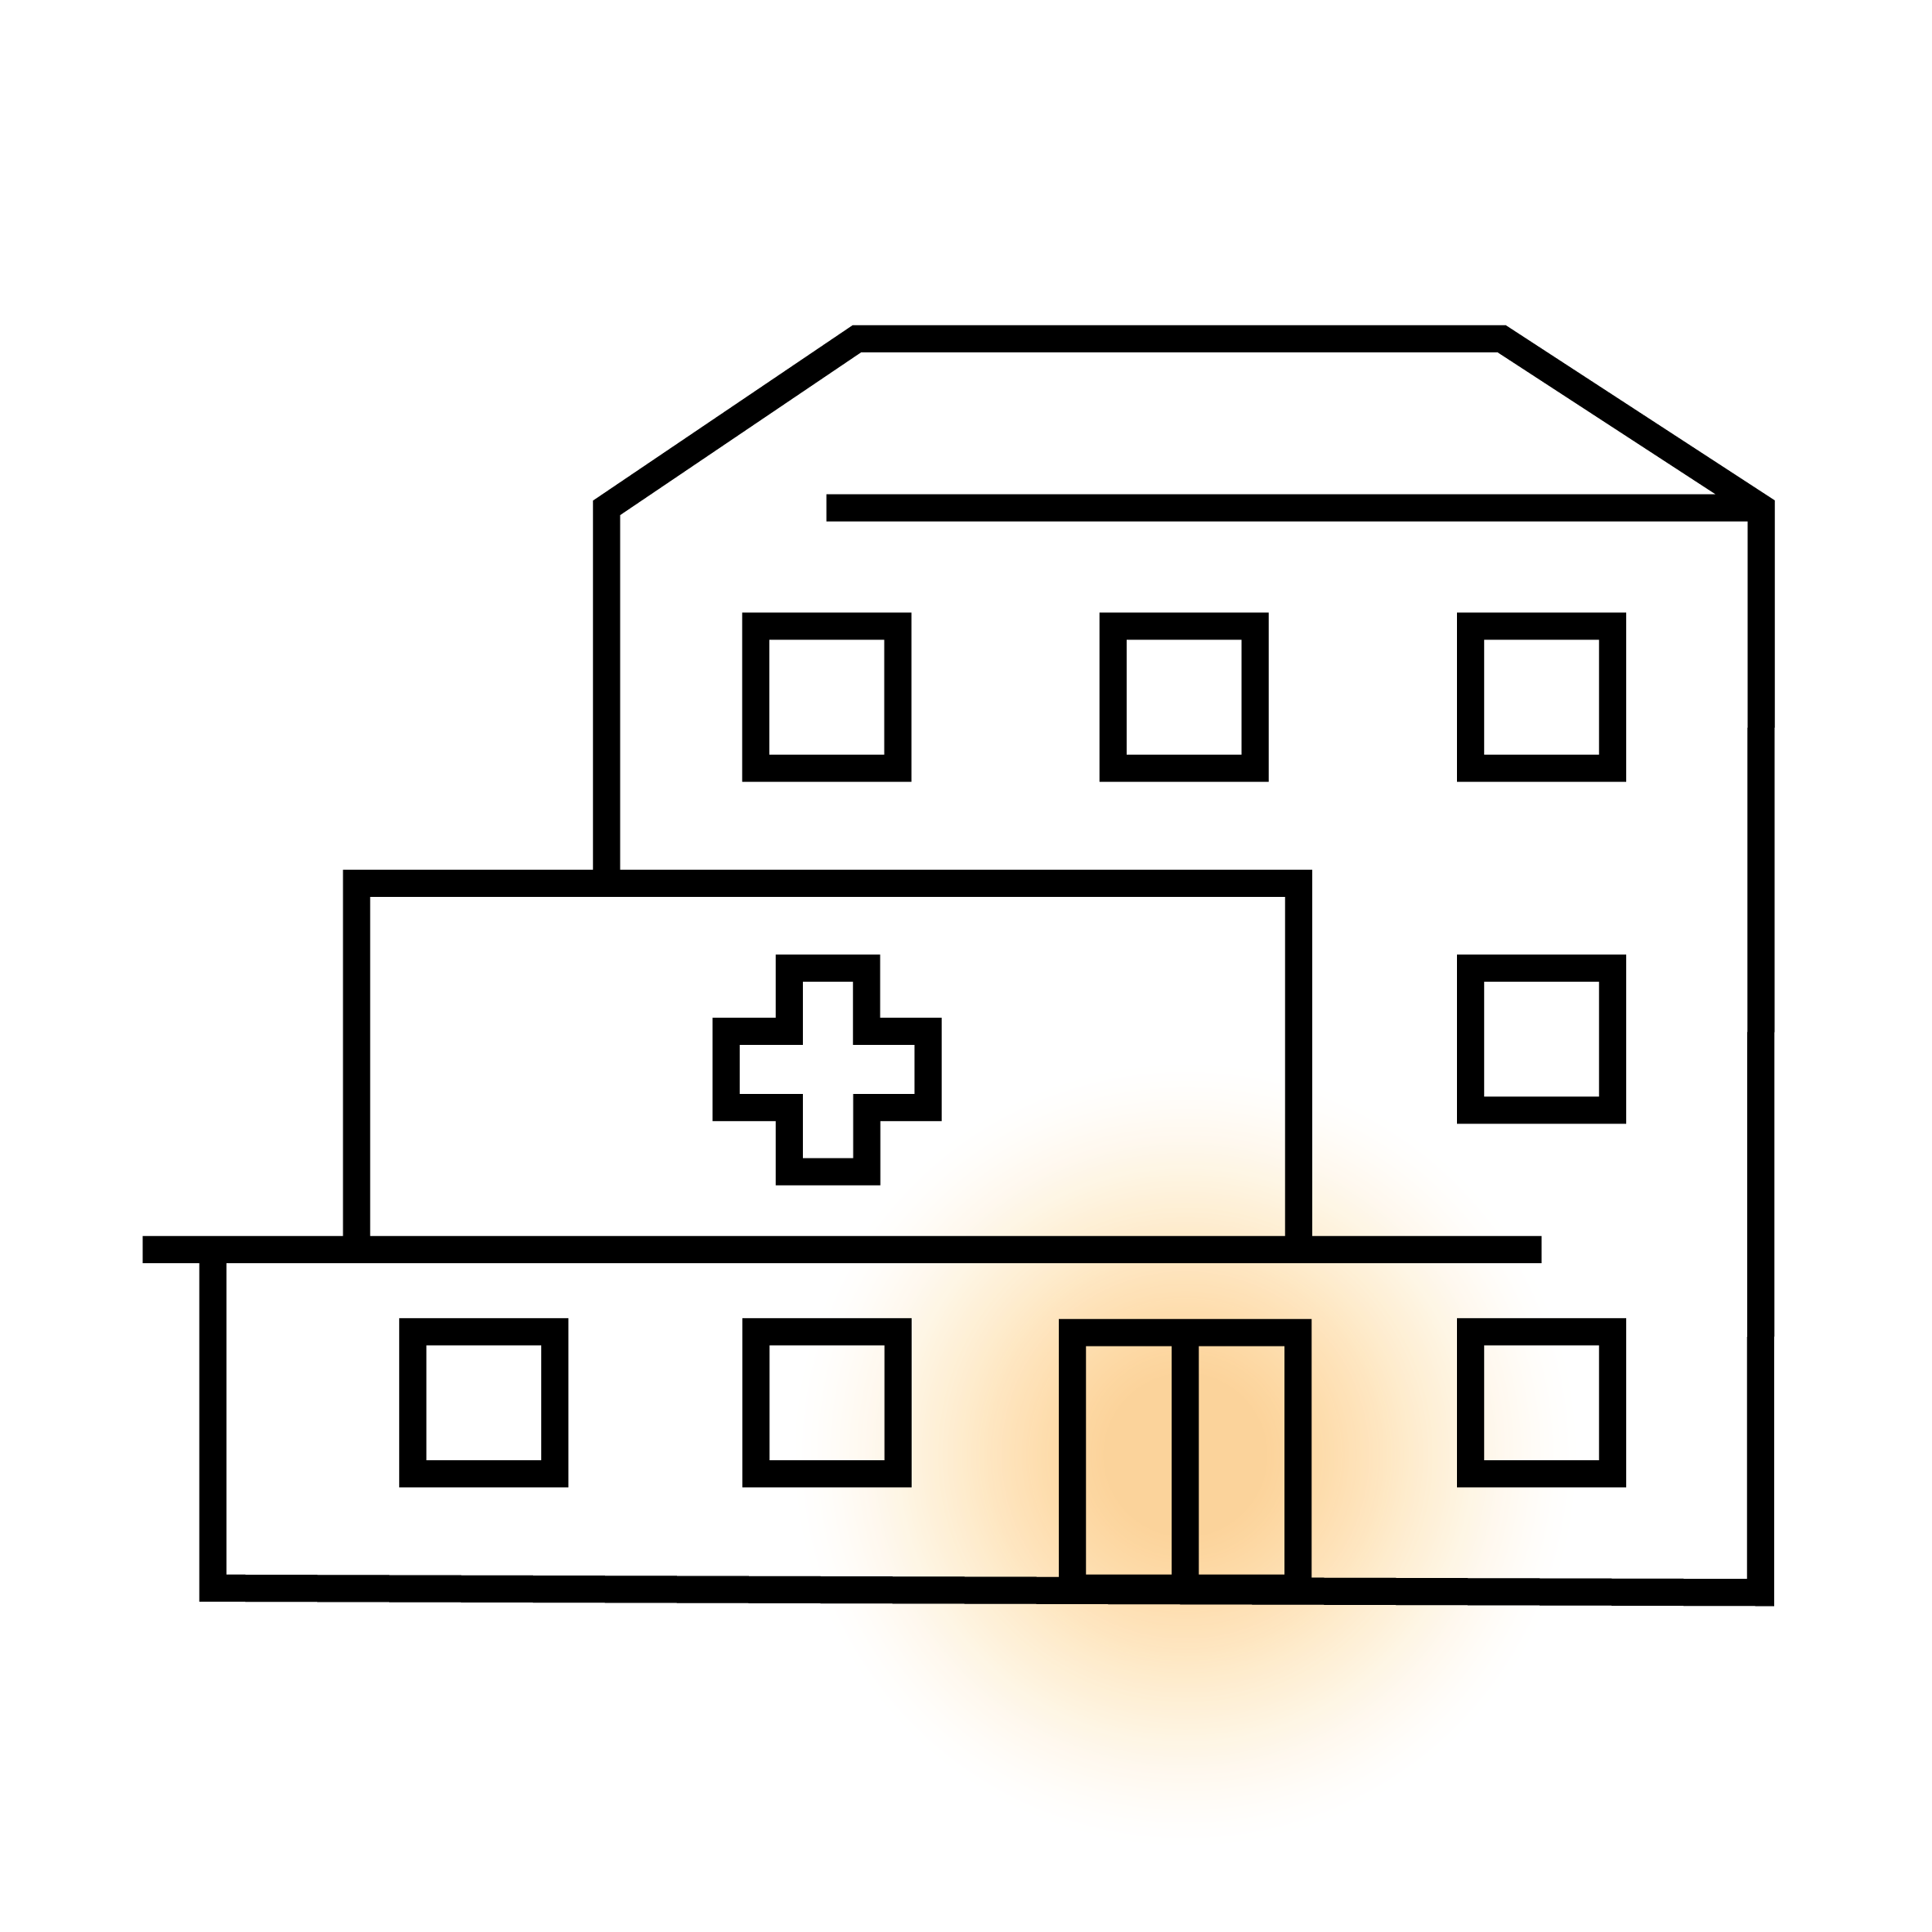 Vereinfachtes Symbol eines Krankenhauses mit einem Kreuz und Fenstern.